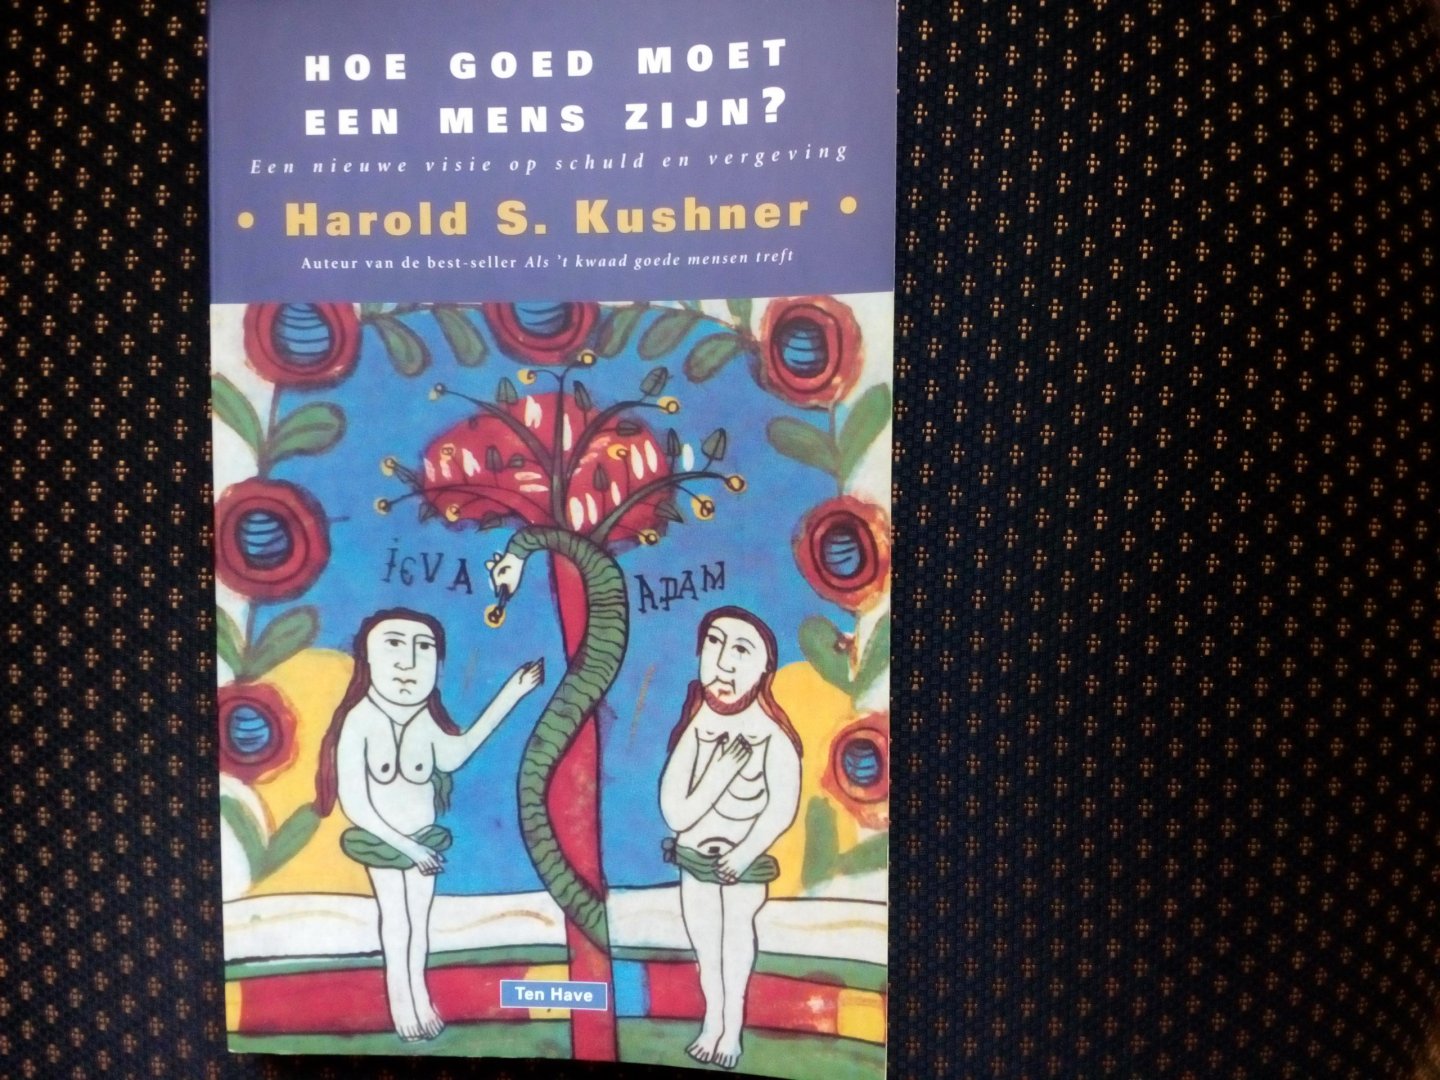 Kushner, H.S. - Hoe goed moet een mens zijn? / druk 1